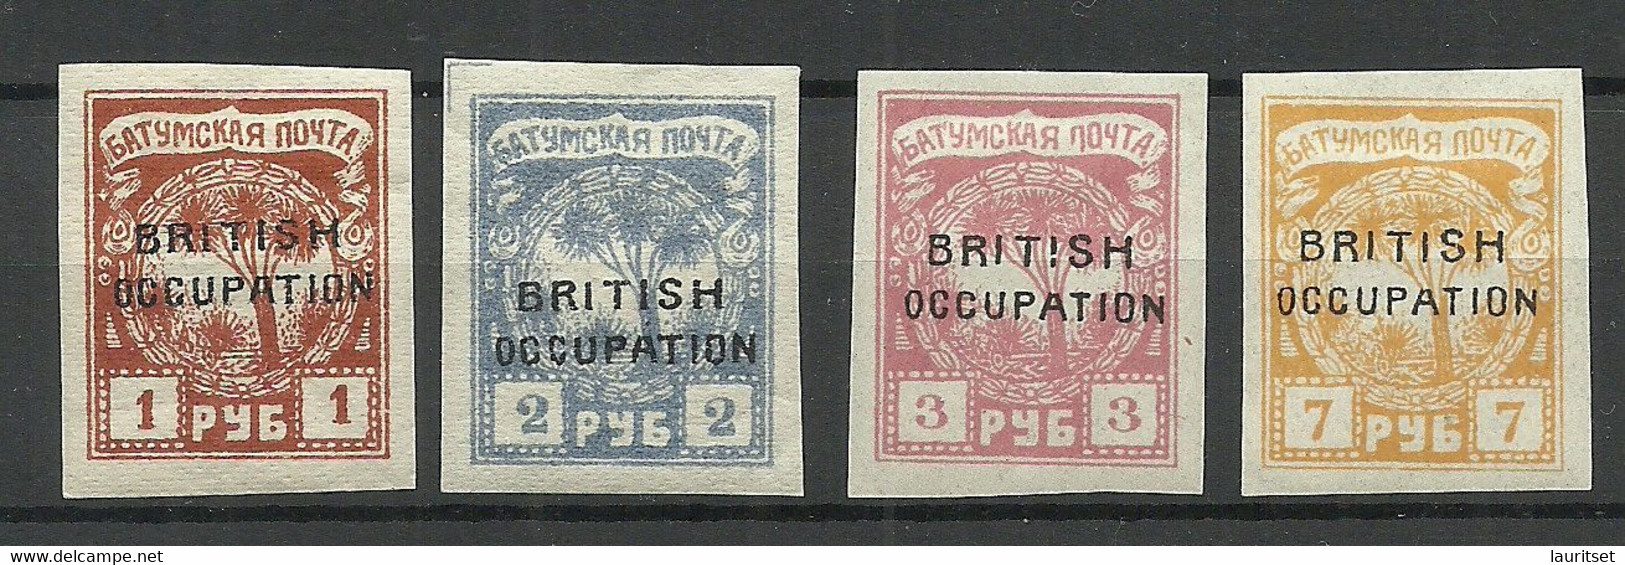 BATUM Batumi RUSSLAND RUSSIA 1919 British Occupation, 4 Stamps,* - 1919-20 Occupation Britannique